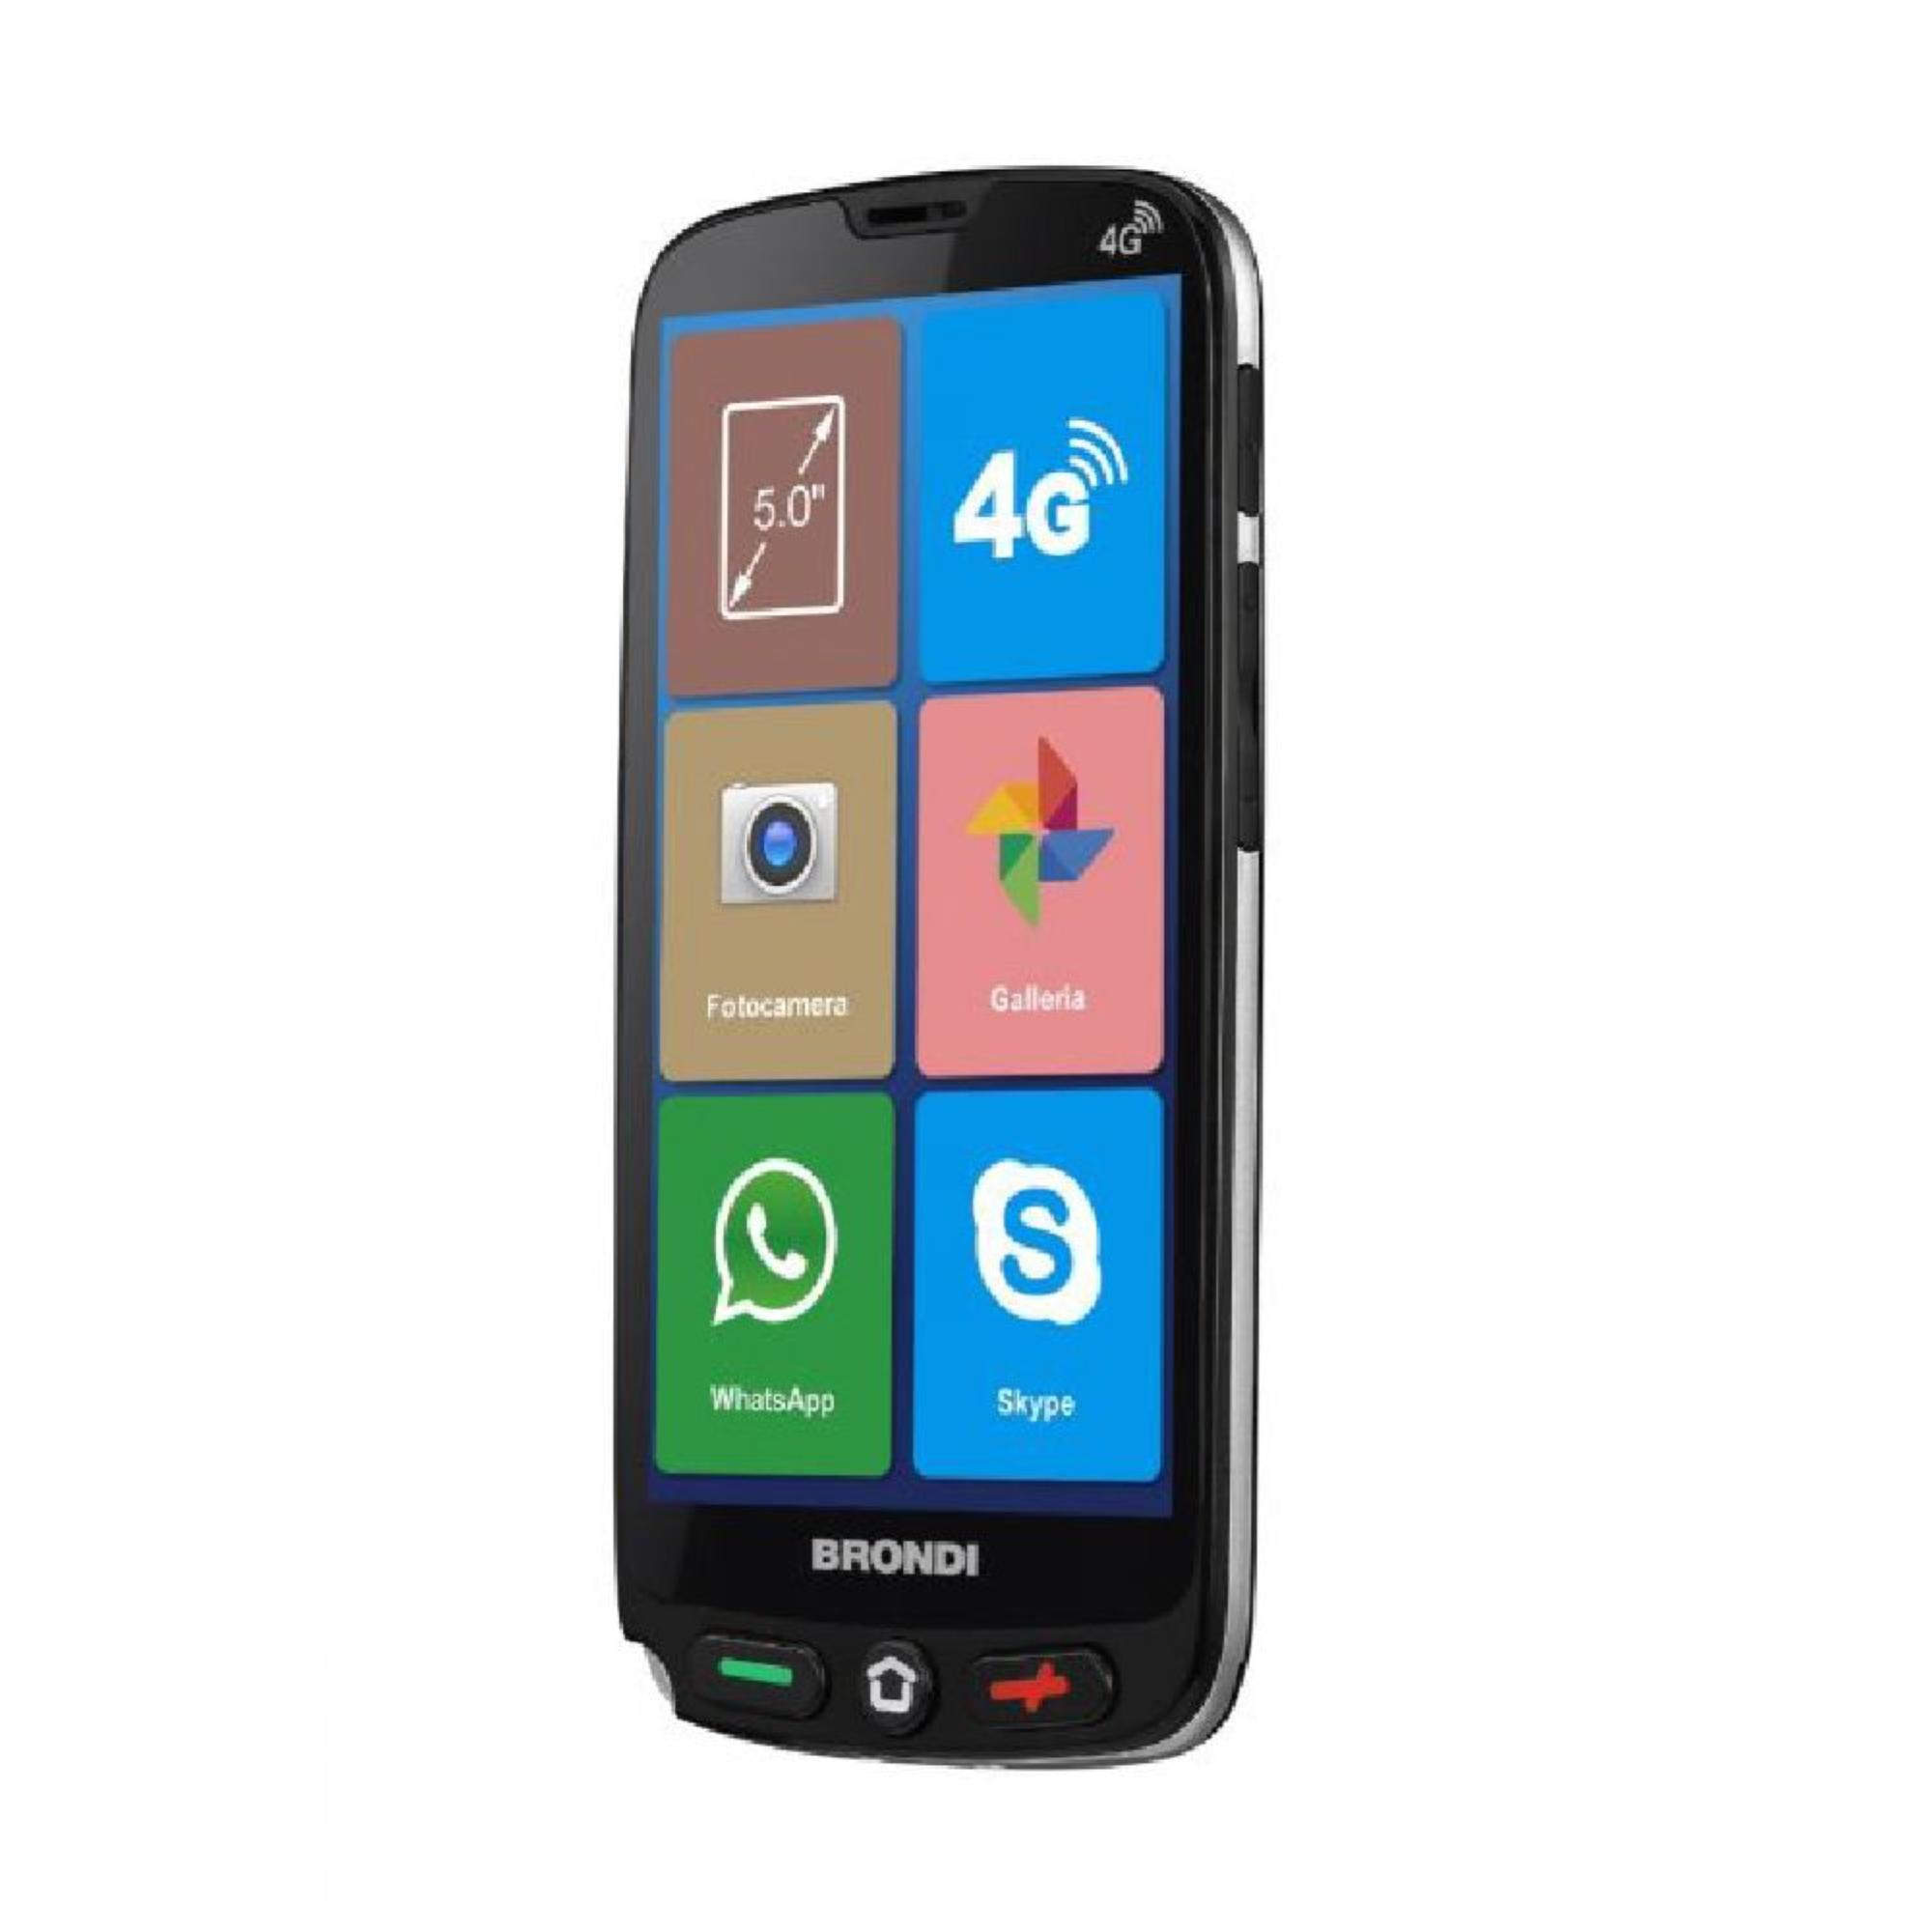 Smartphone – BRONDI AMICO SMARTPHONE S 8GB BLACK